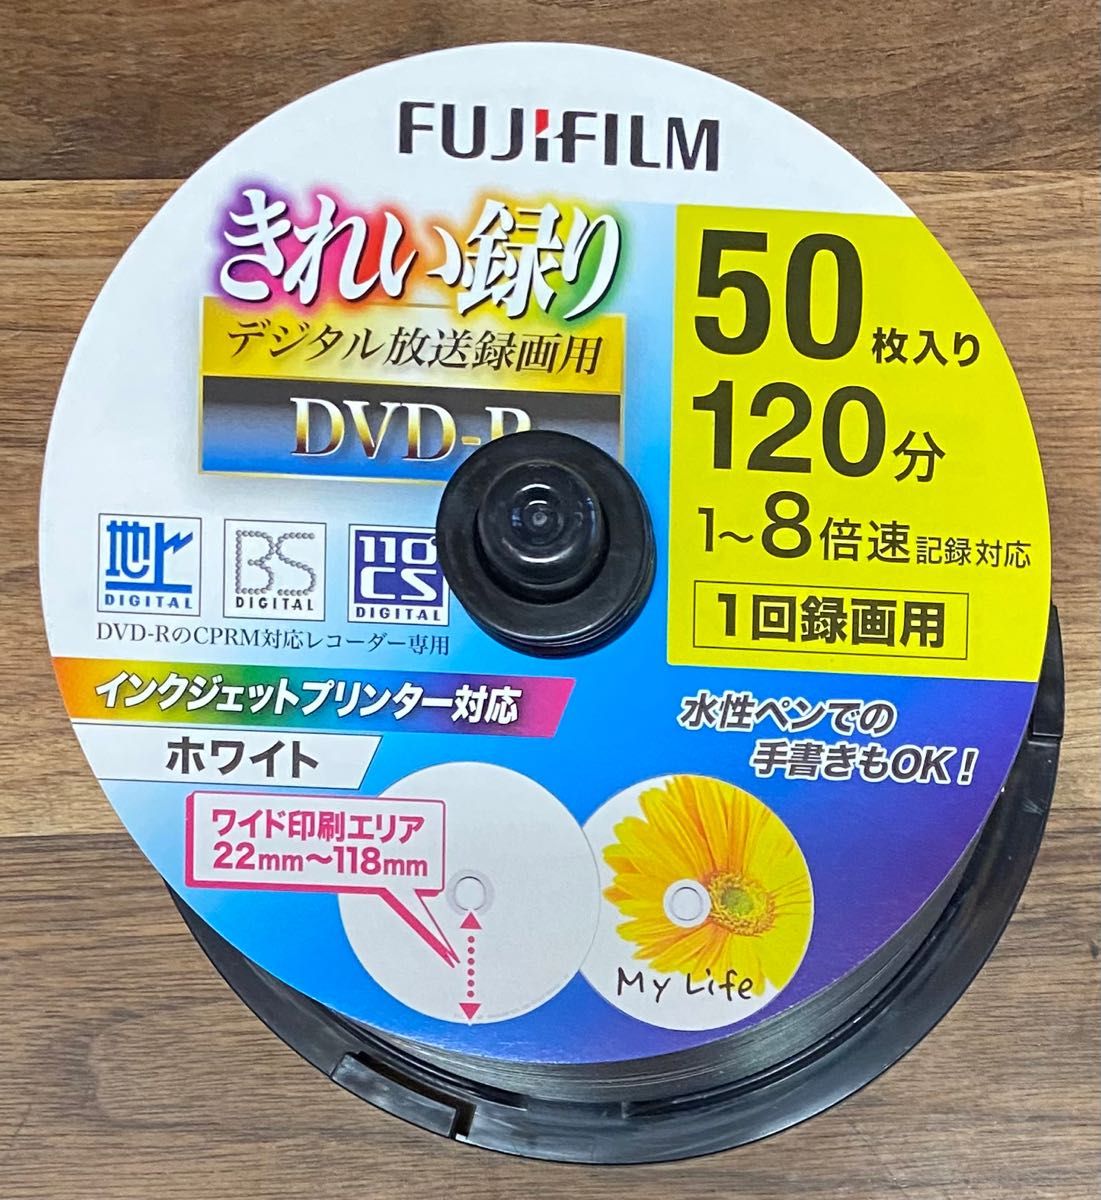 新作人気モデル 三菱化学 データ用DVD-R 250枚 50枚 DHR47JP50V3Cメディア